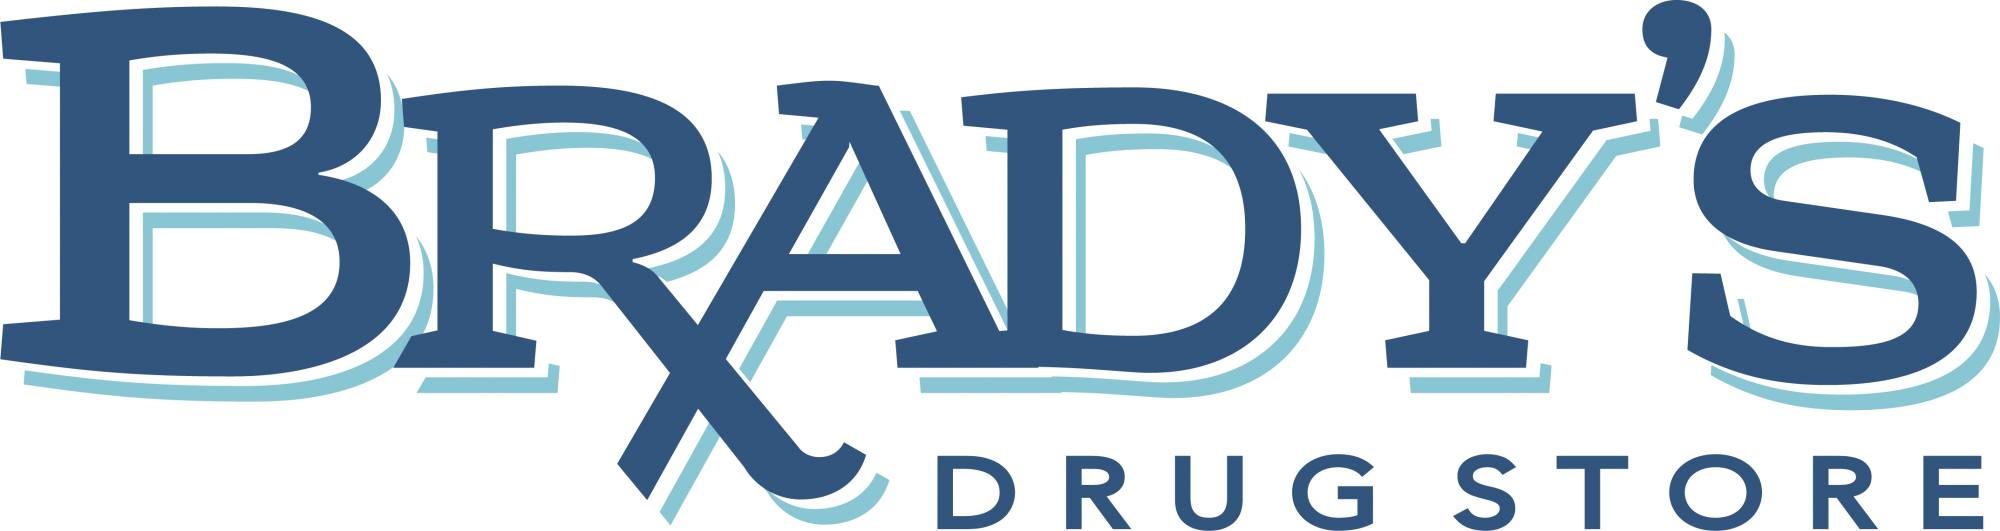 Brady's Drug Store Logo